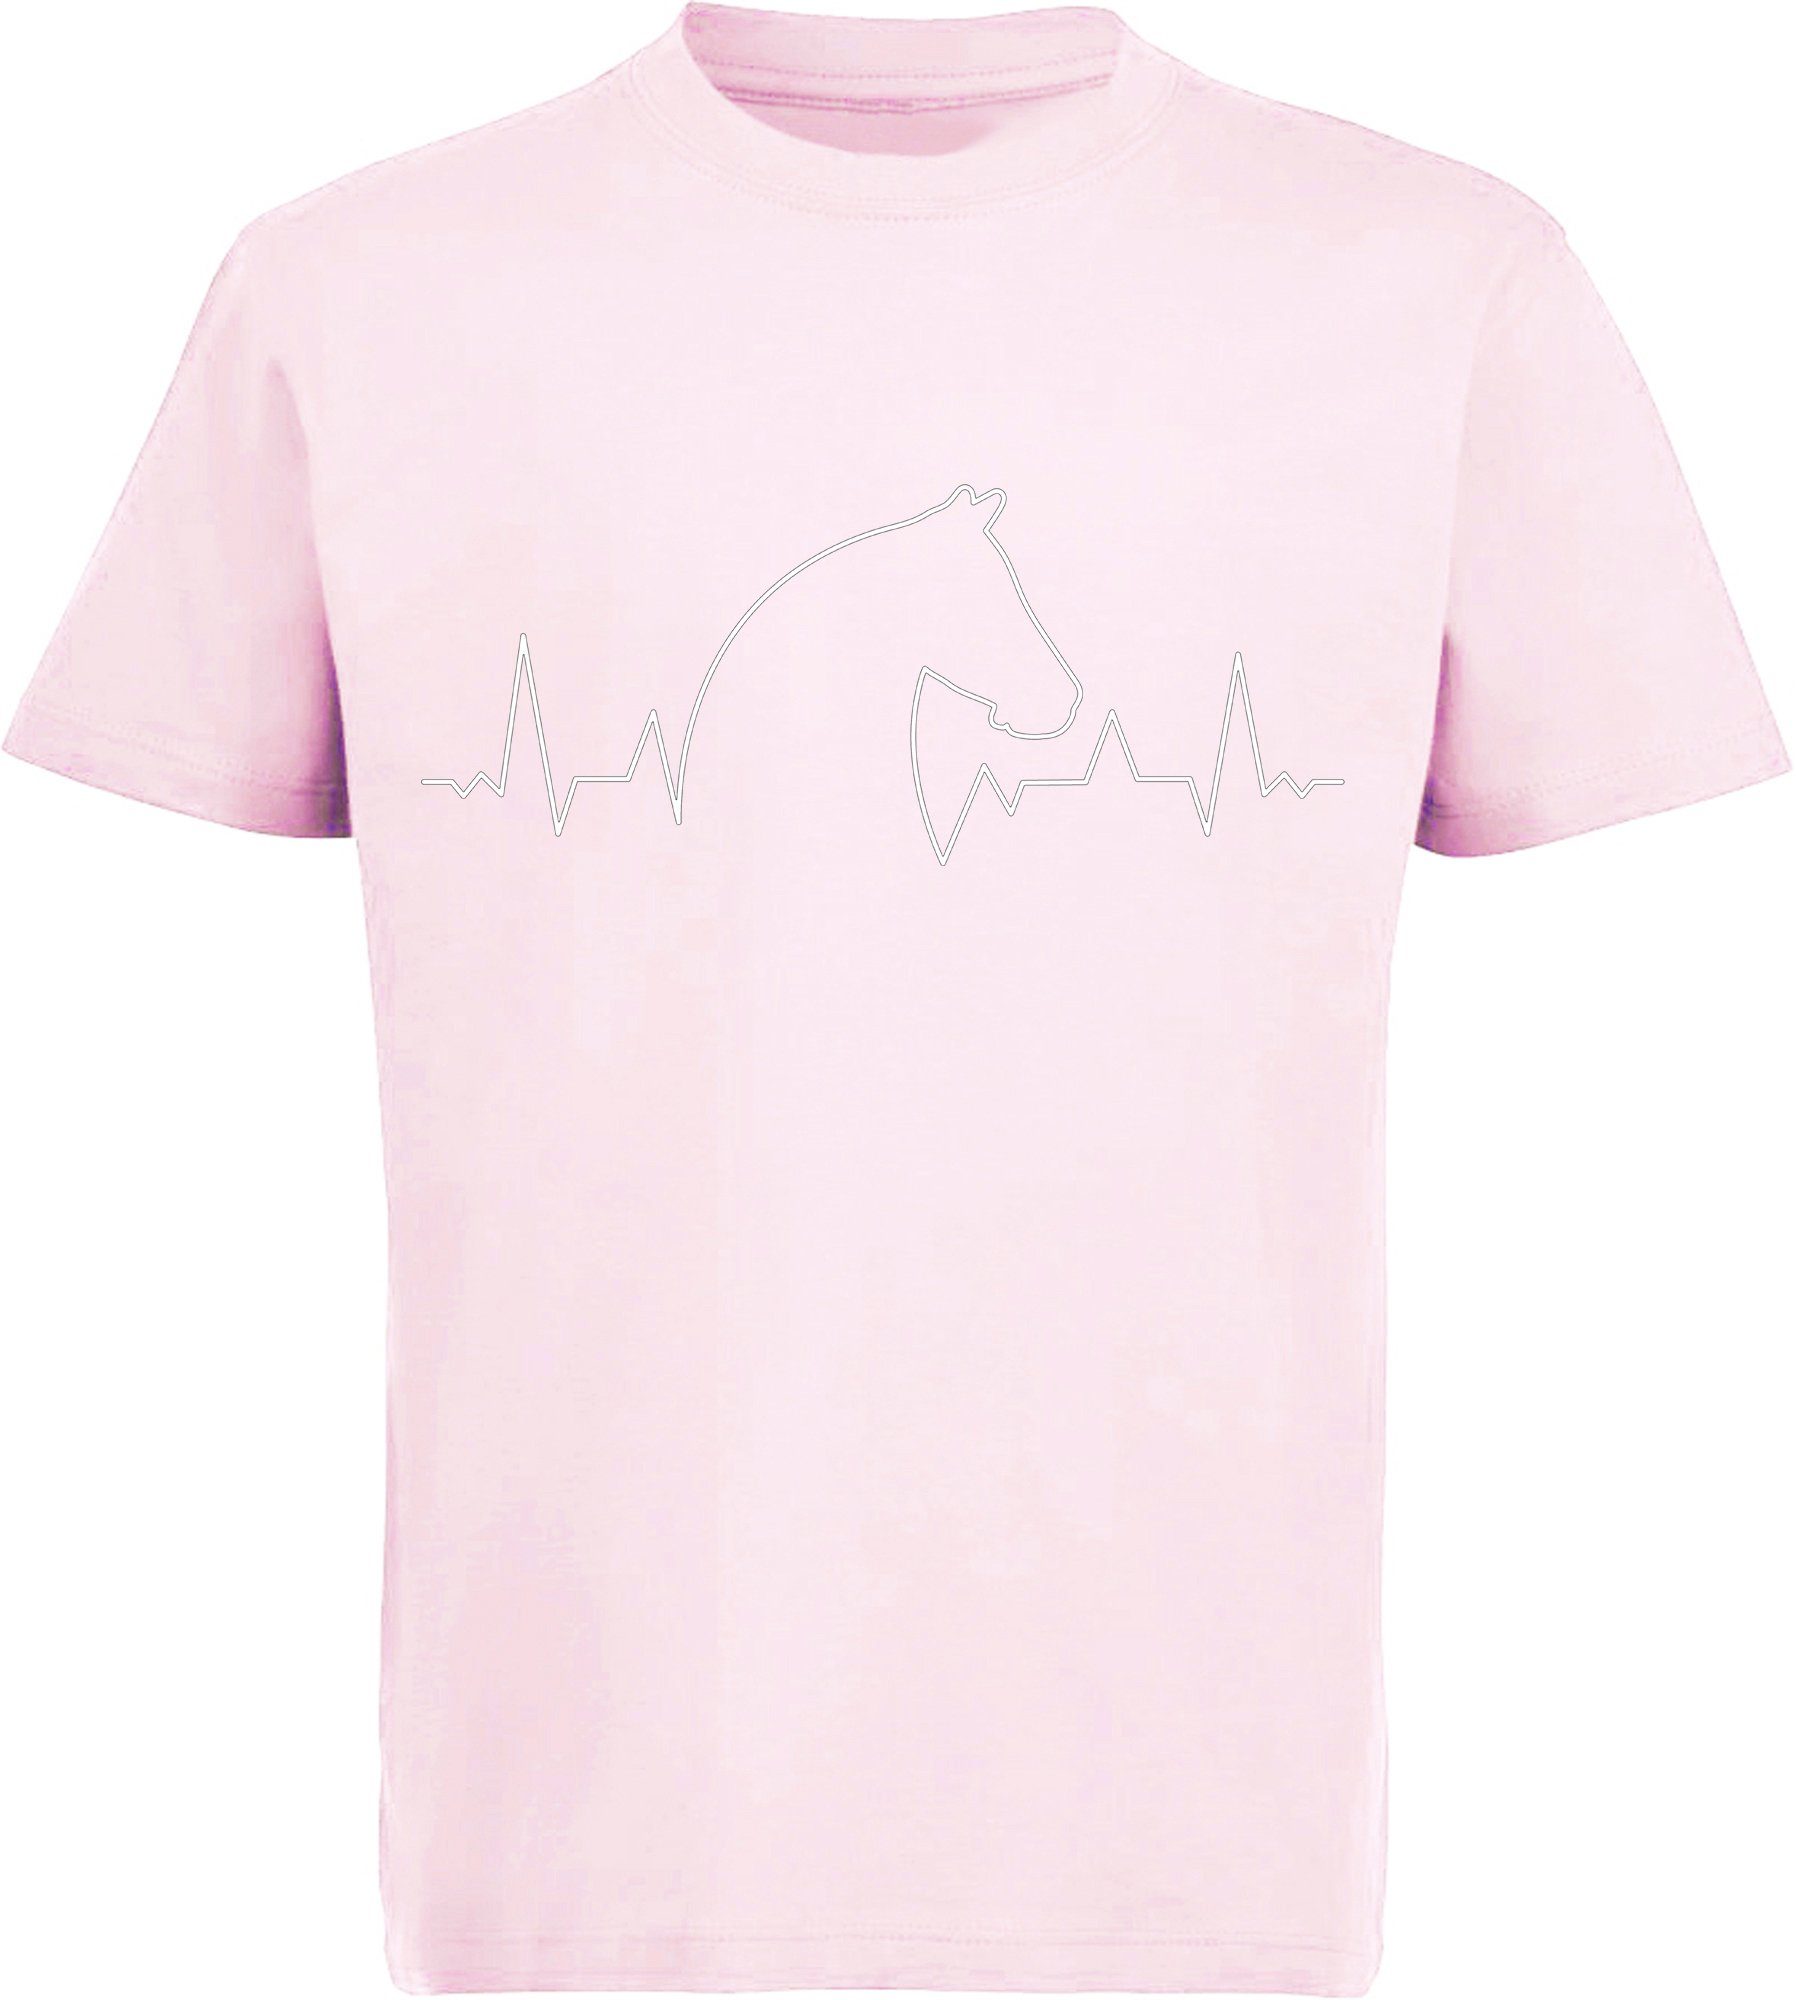 MyDesign24 Print-Shirt bedrucktes Kinder T-Shirt Herzschlaglinie mit Pferdekopf Baumwollshirt mit Aufdruck, i154 rosa